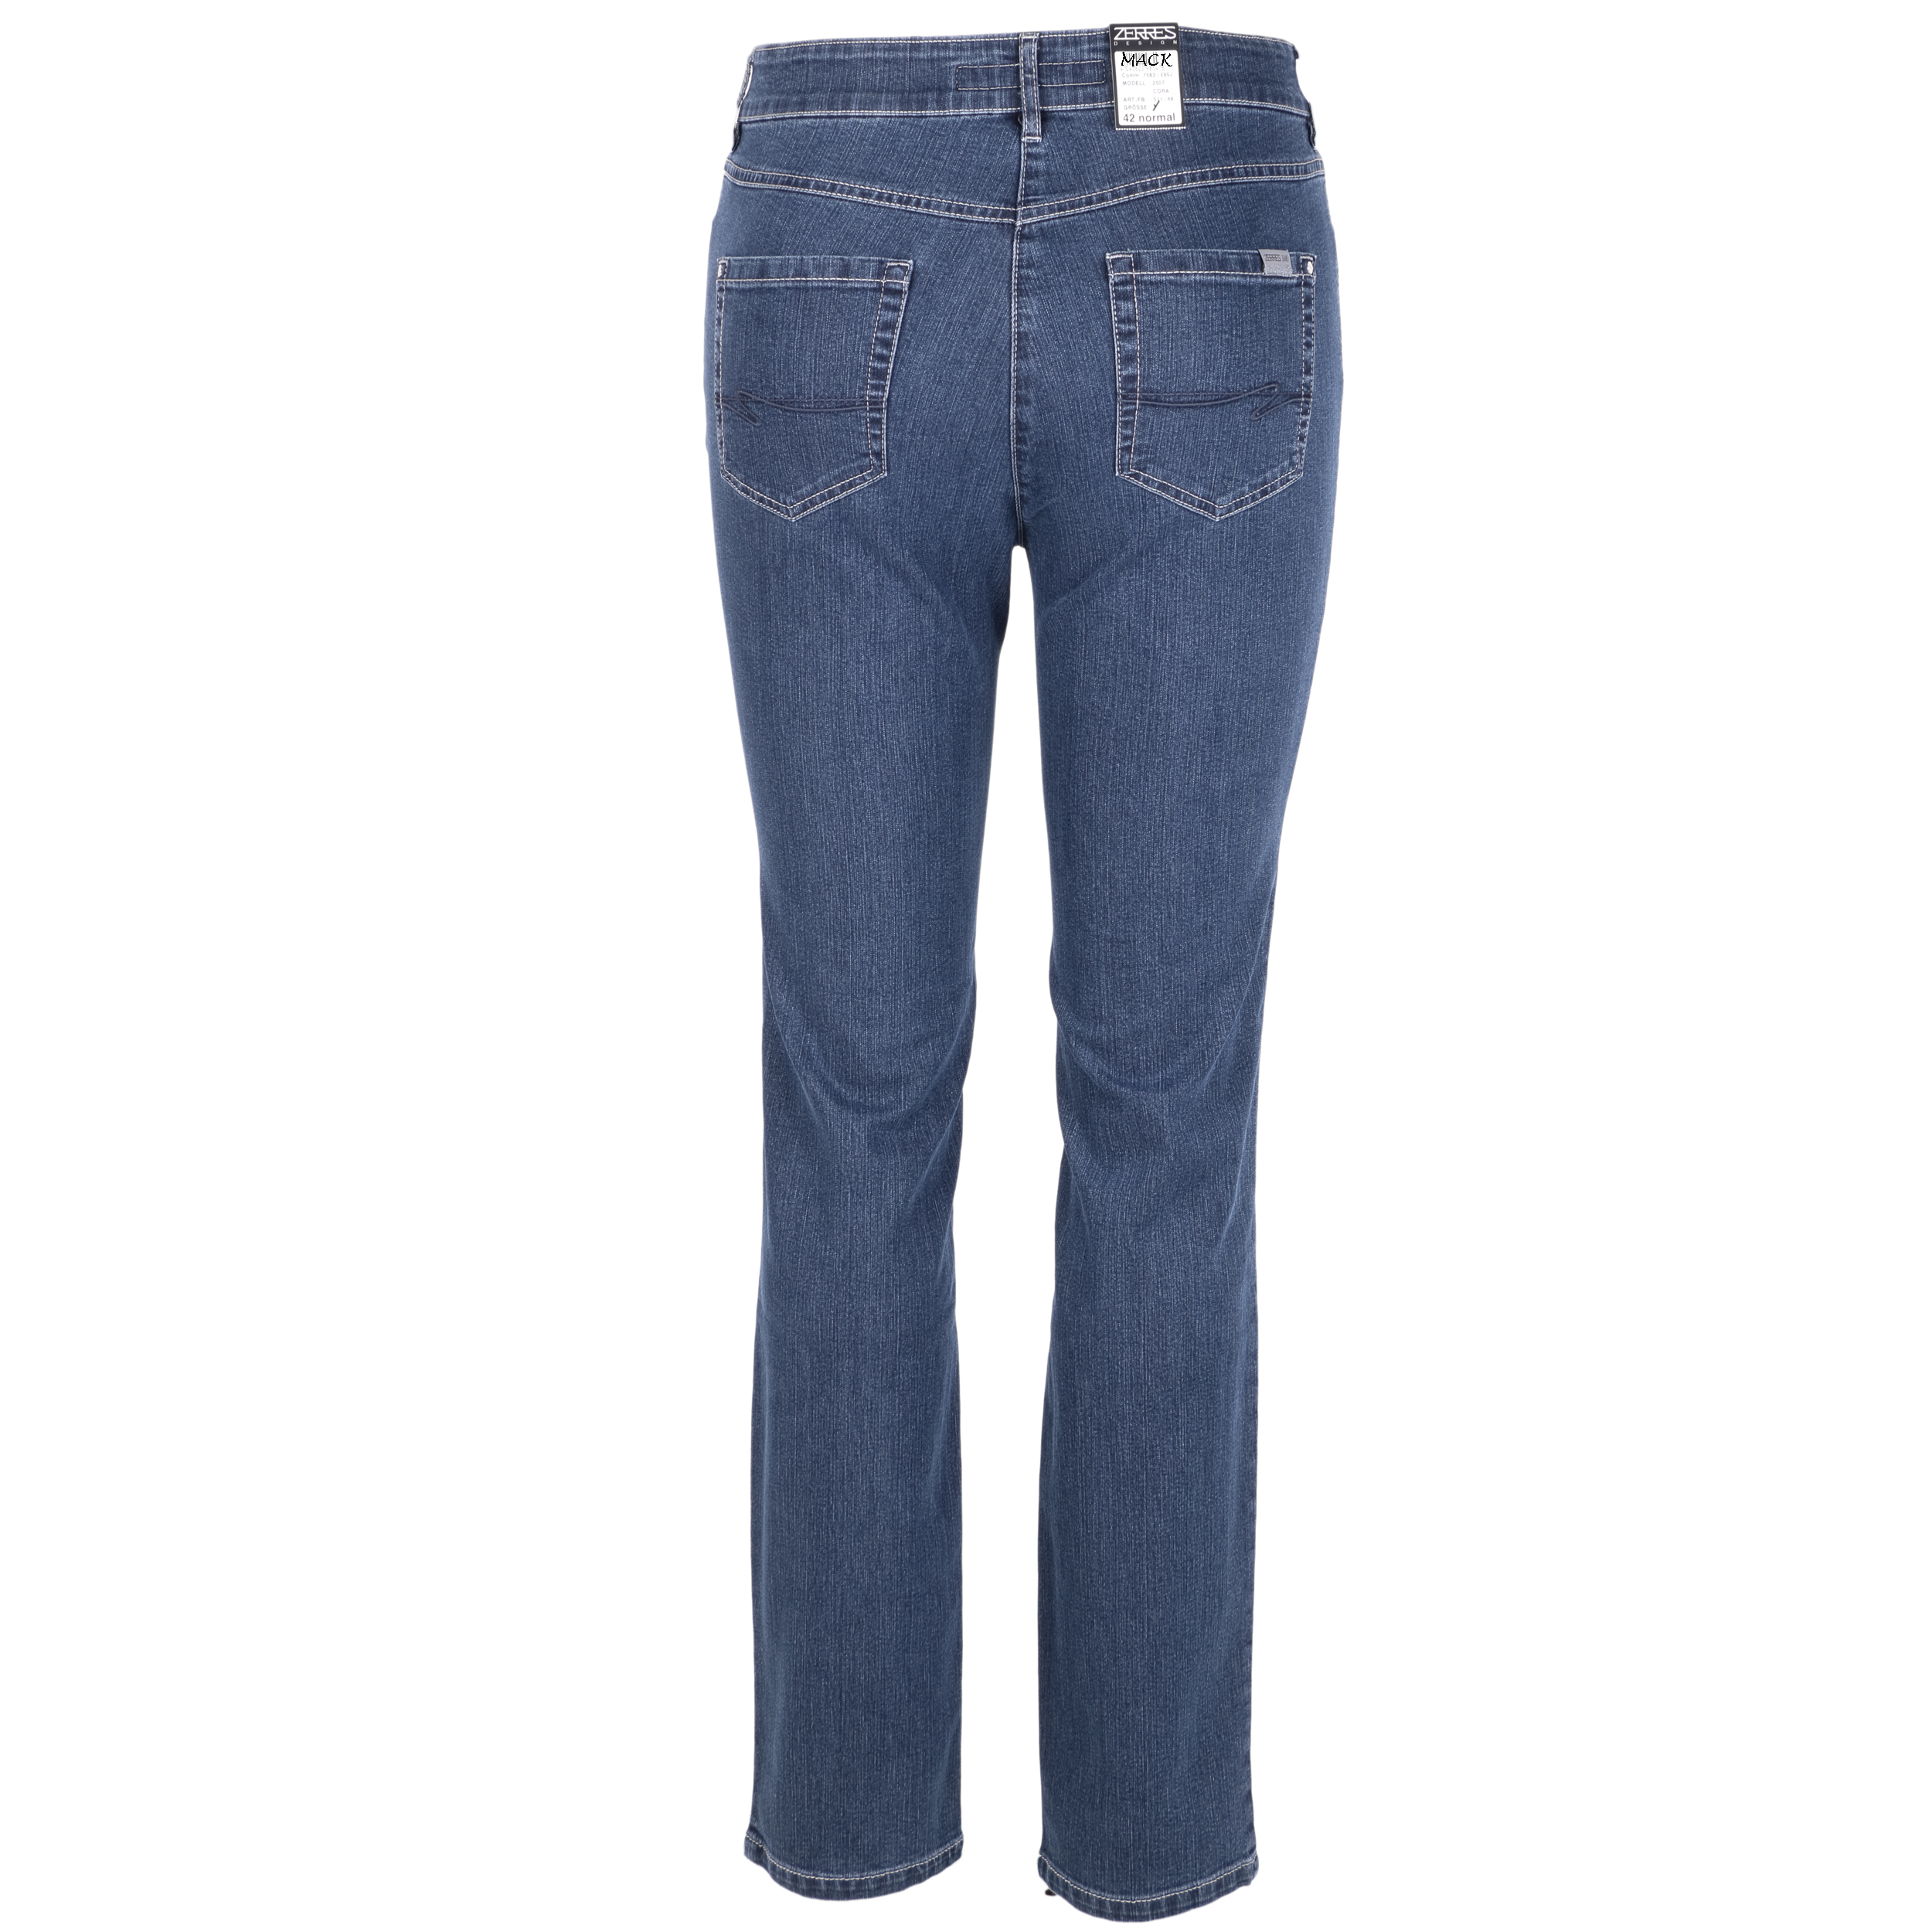 Zerres Damen Jeans Cora comfort S 40 blau